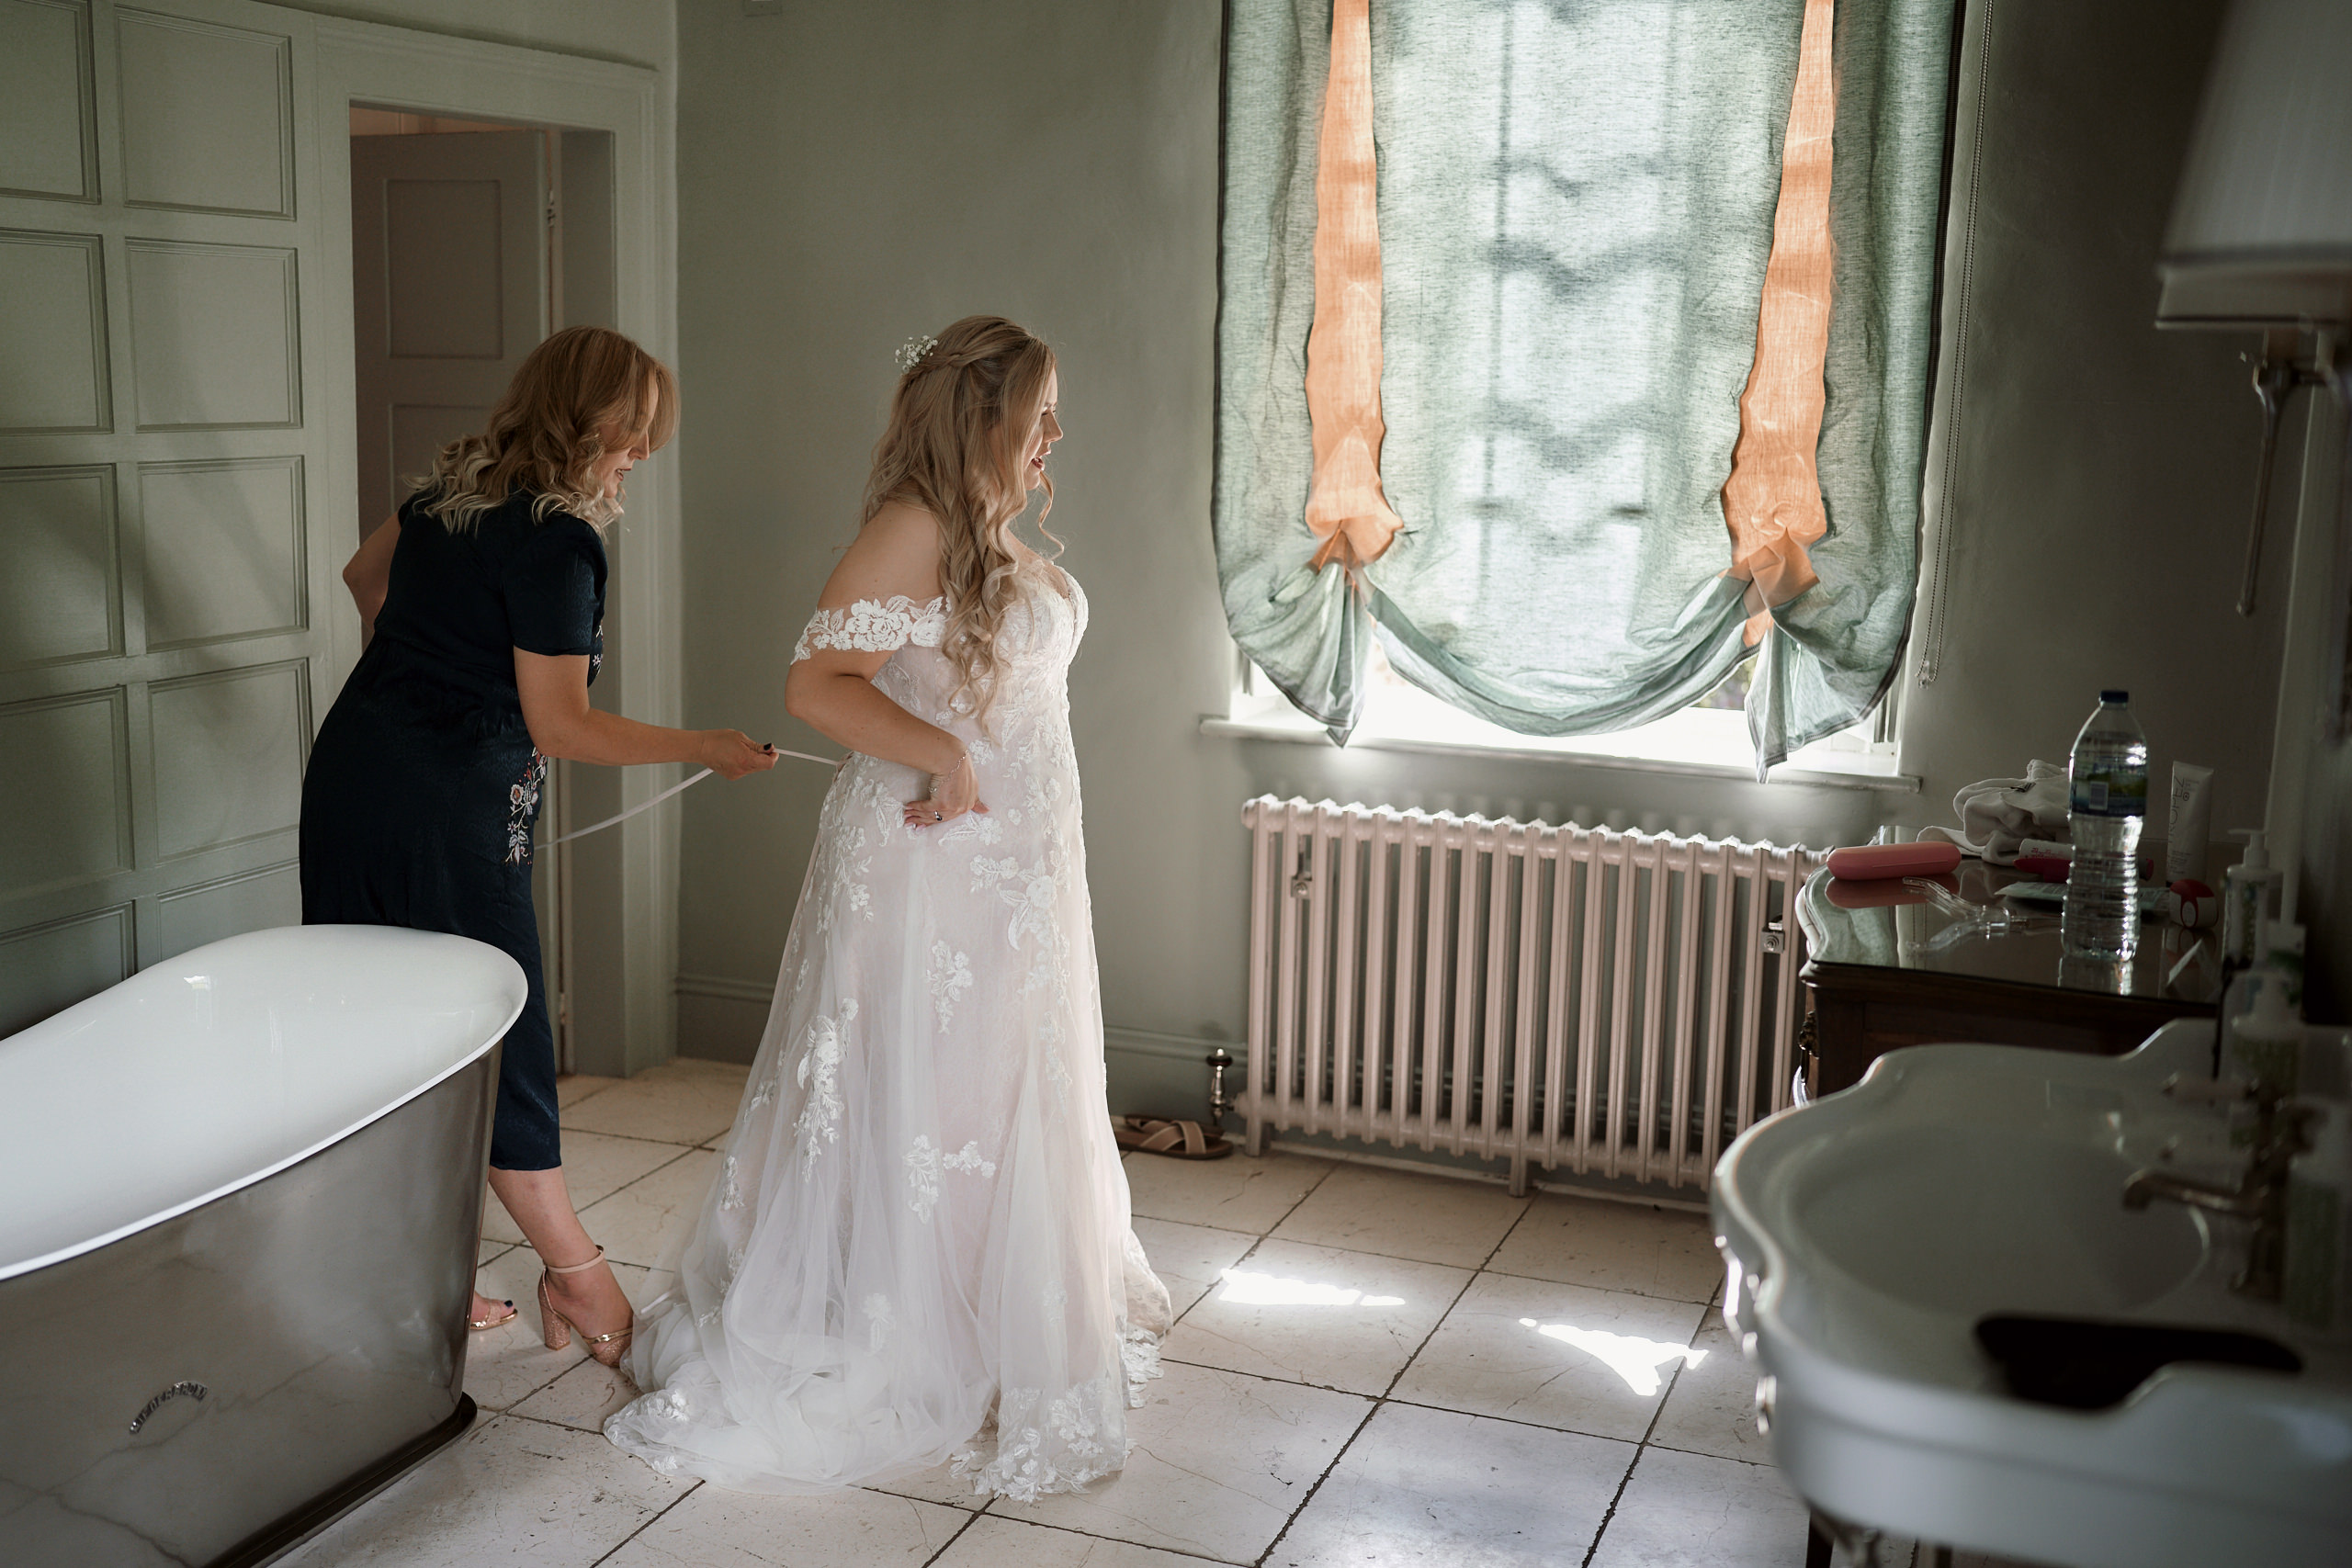 A bride is preparing herself in the bathroom.